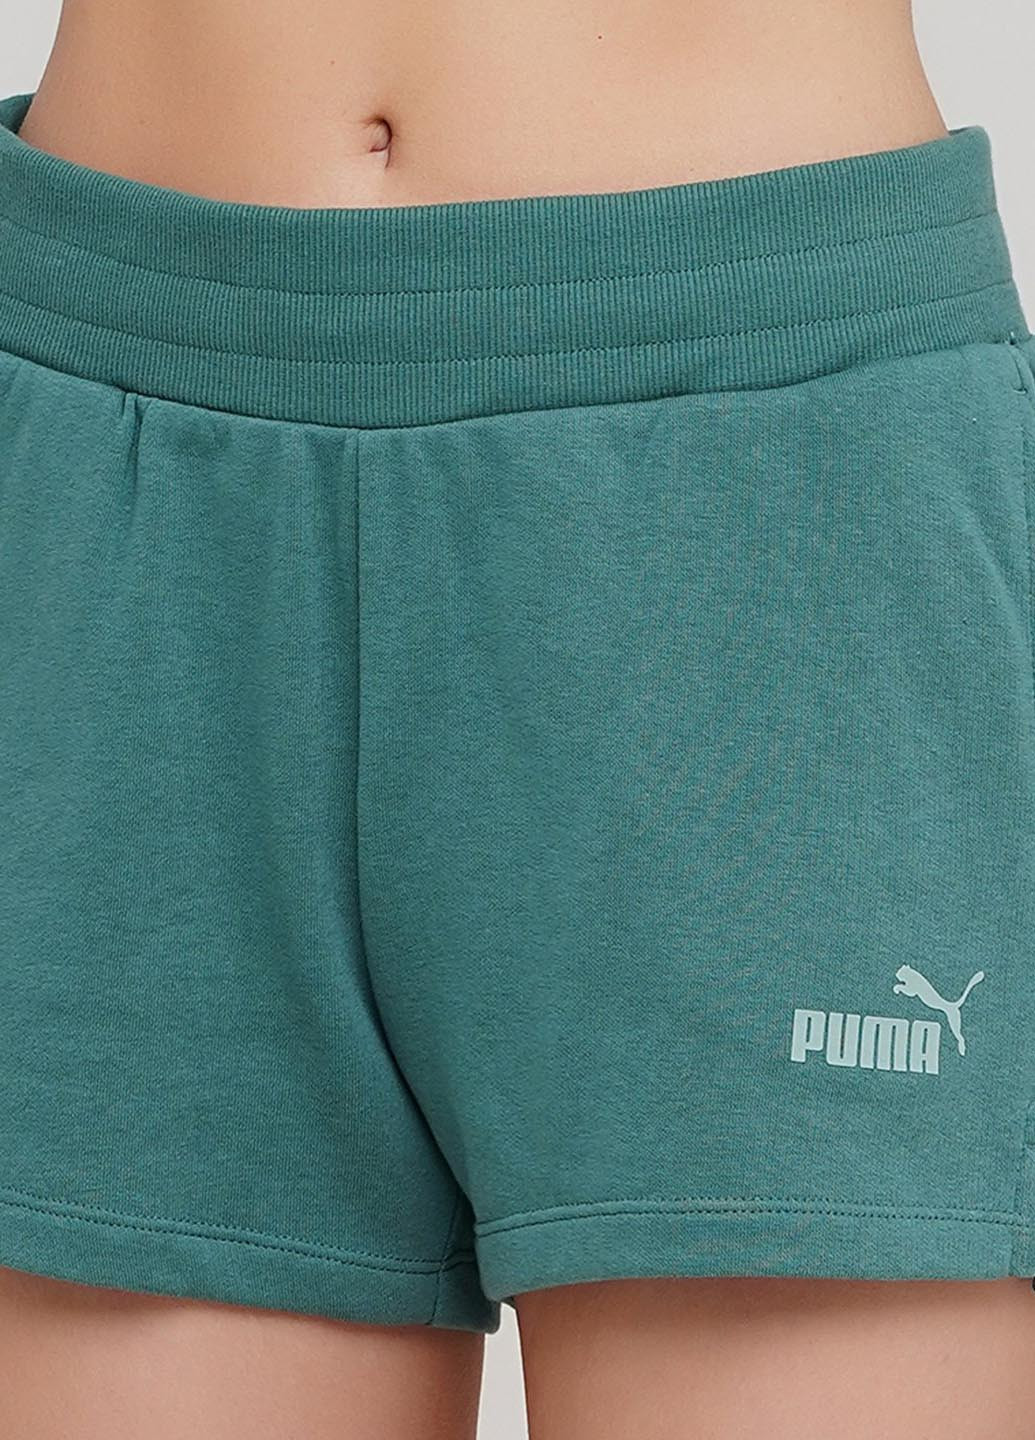 Шорты Puma "ess 4"" sweat shorts tr" (228499838)